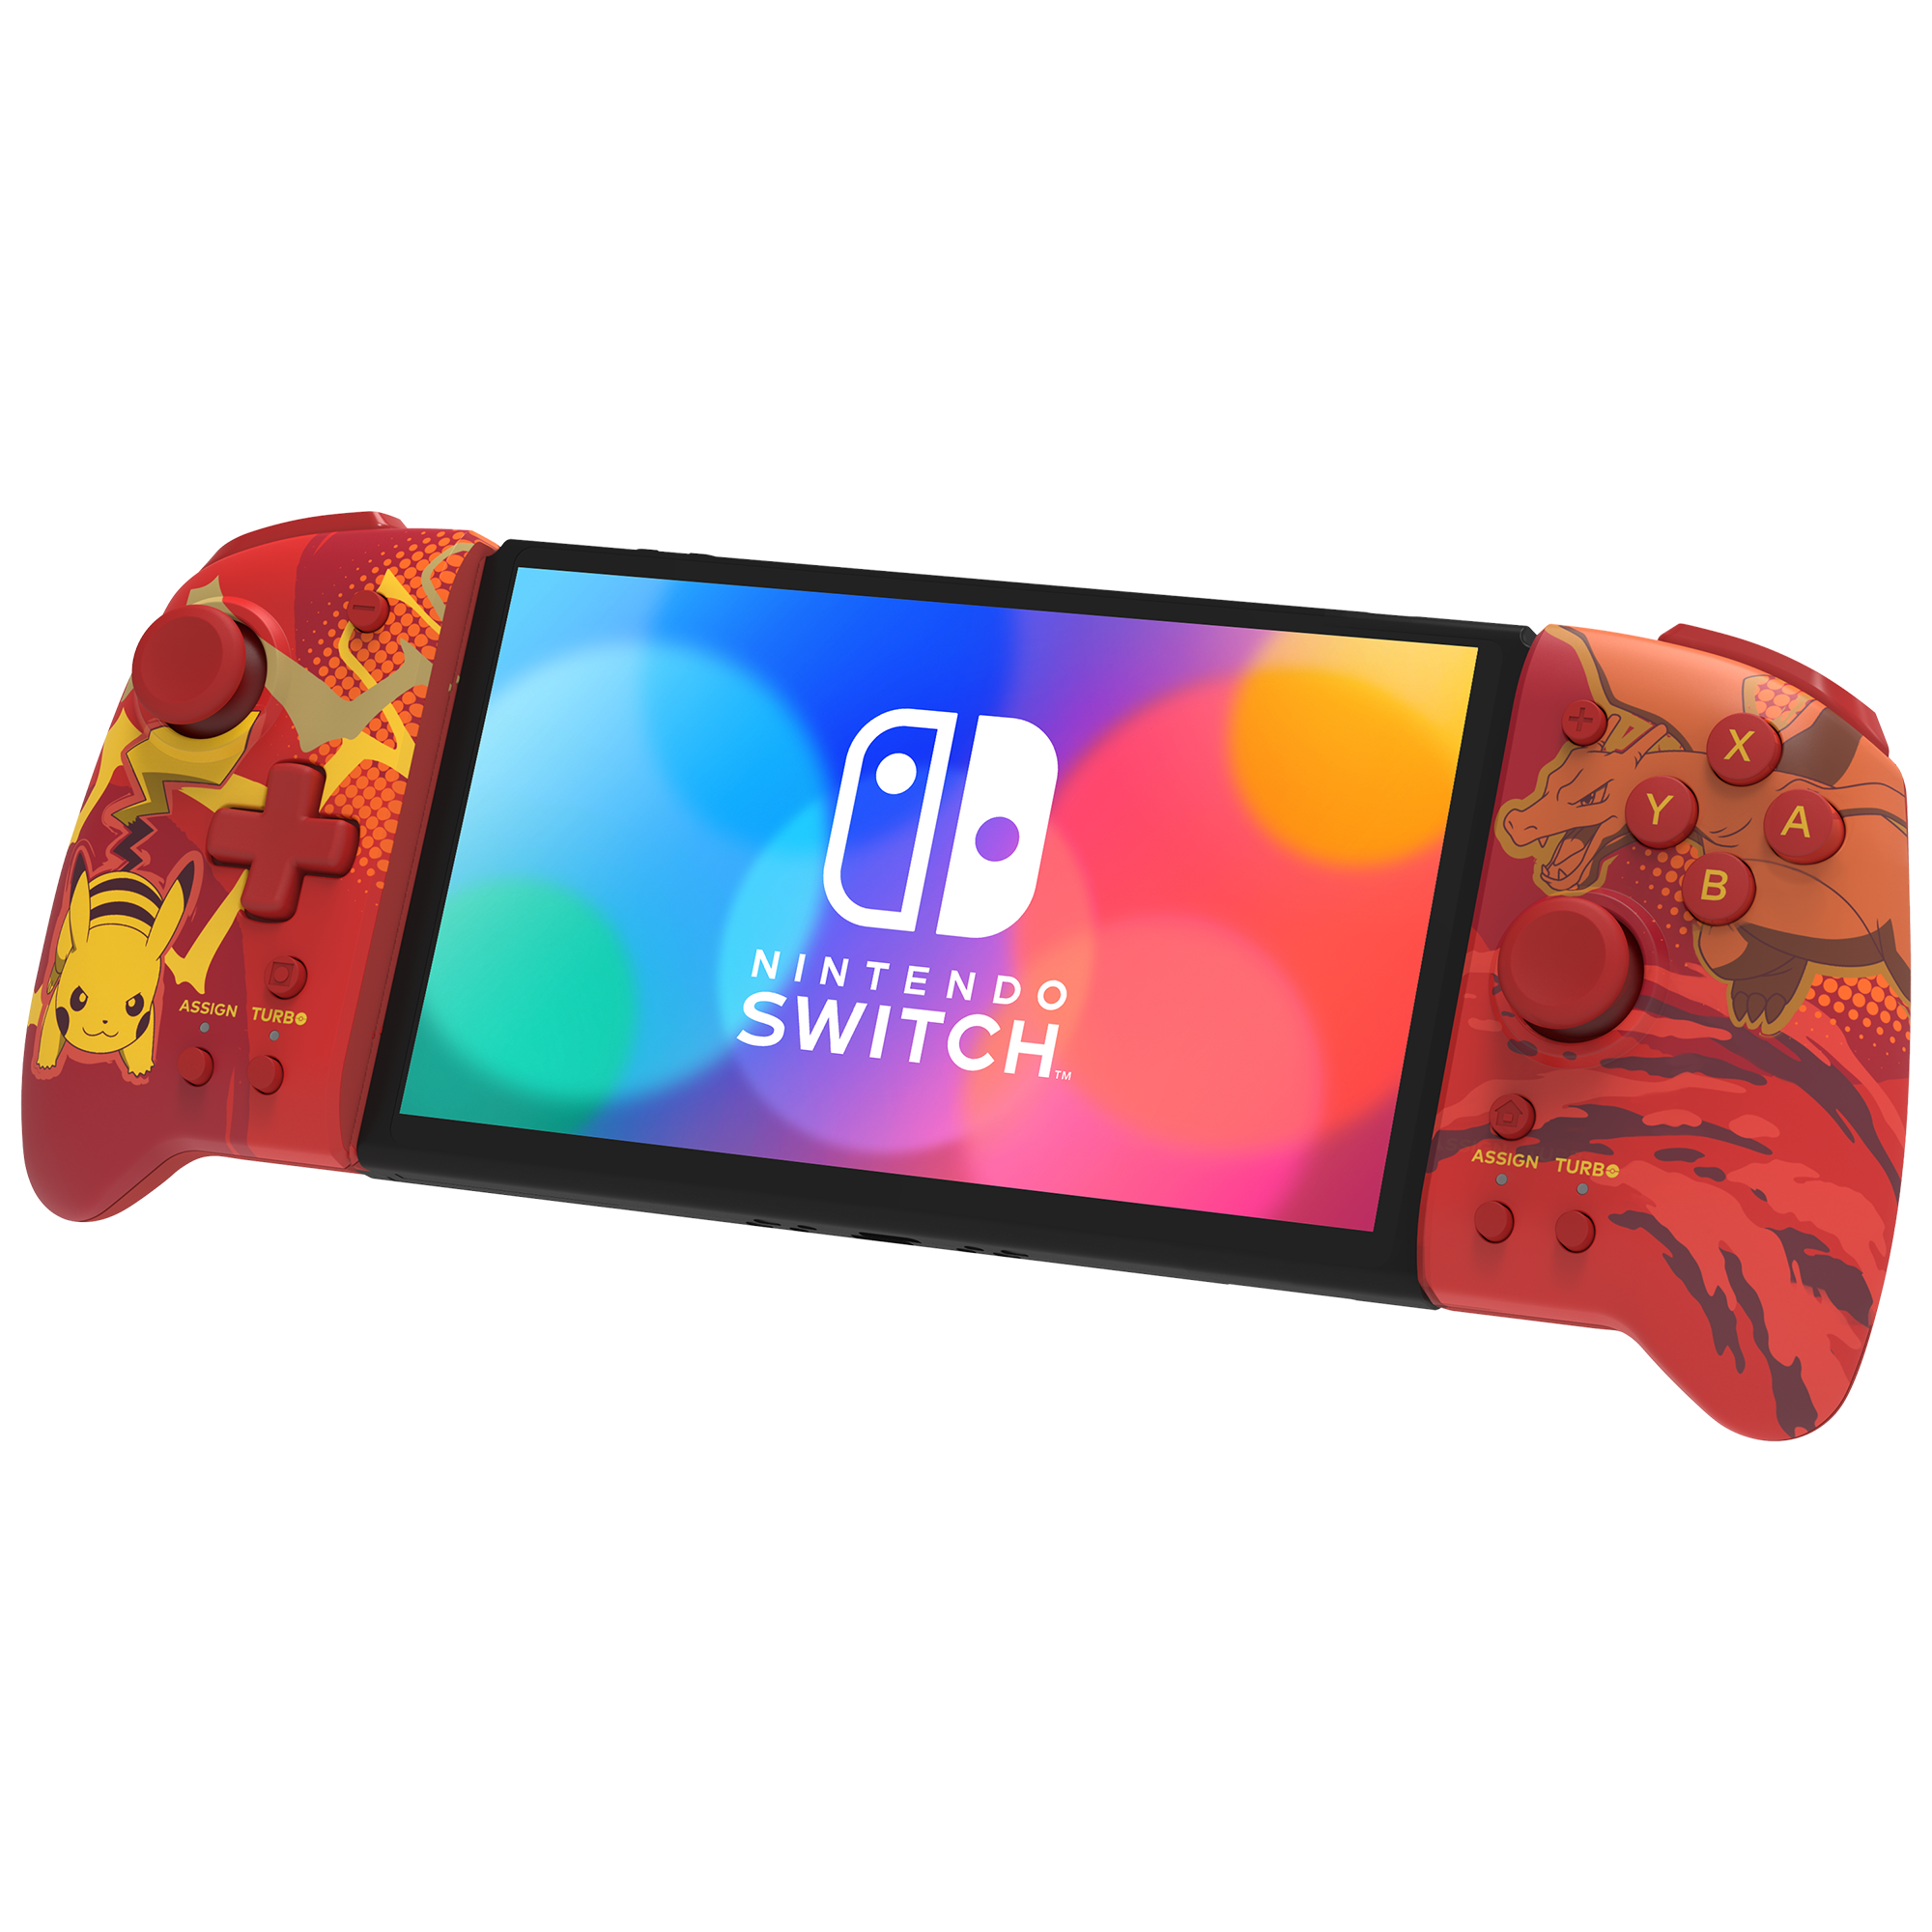 2er Set Gaming-Lenkrad mit Griff für Nintendo Switch-Controller